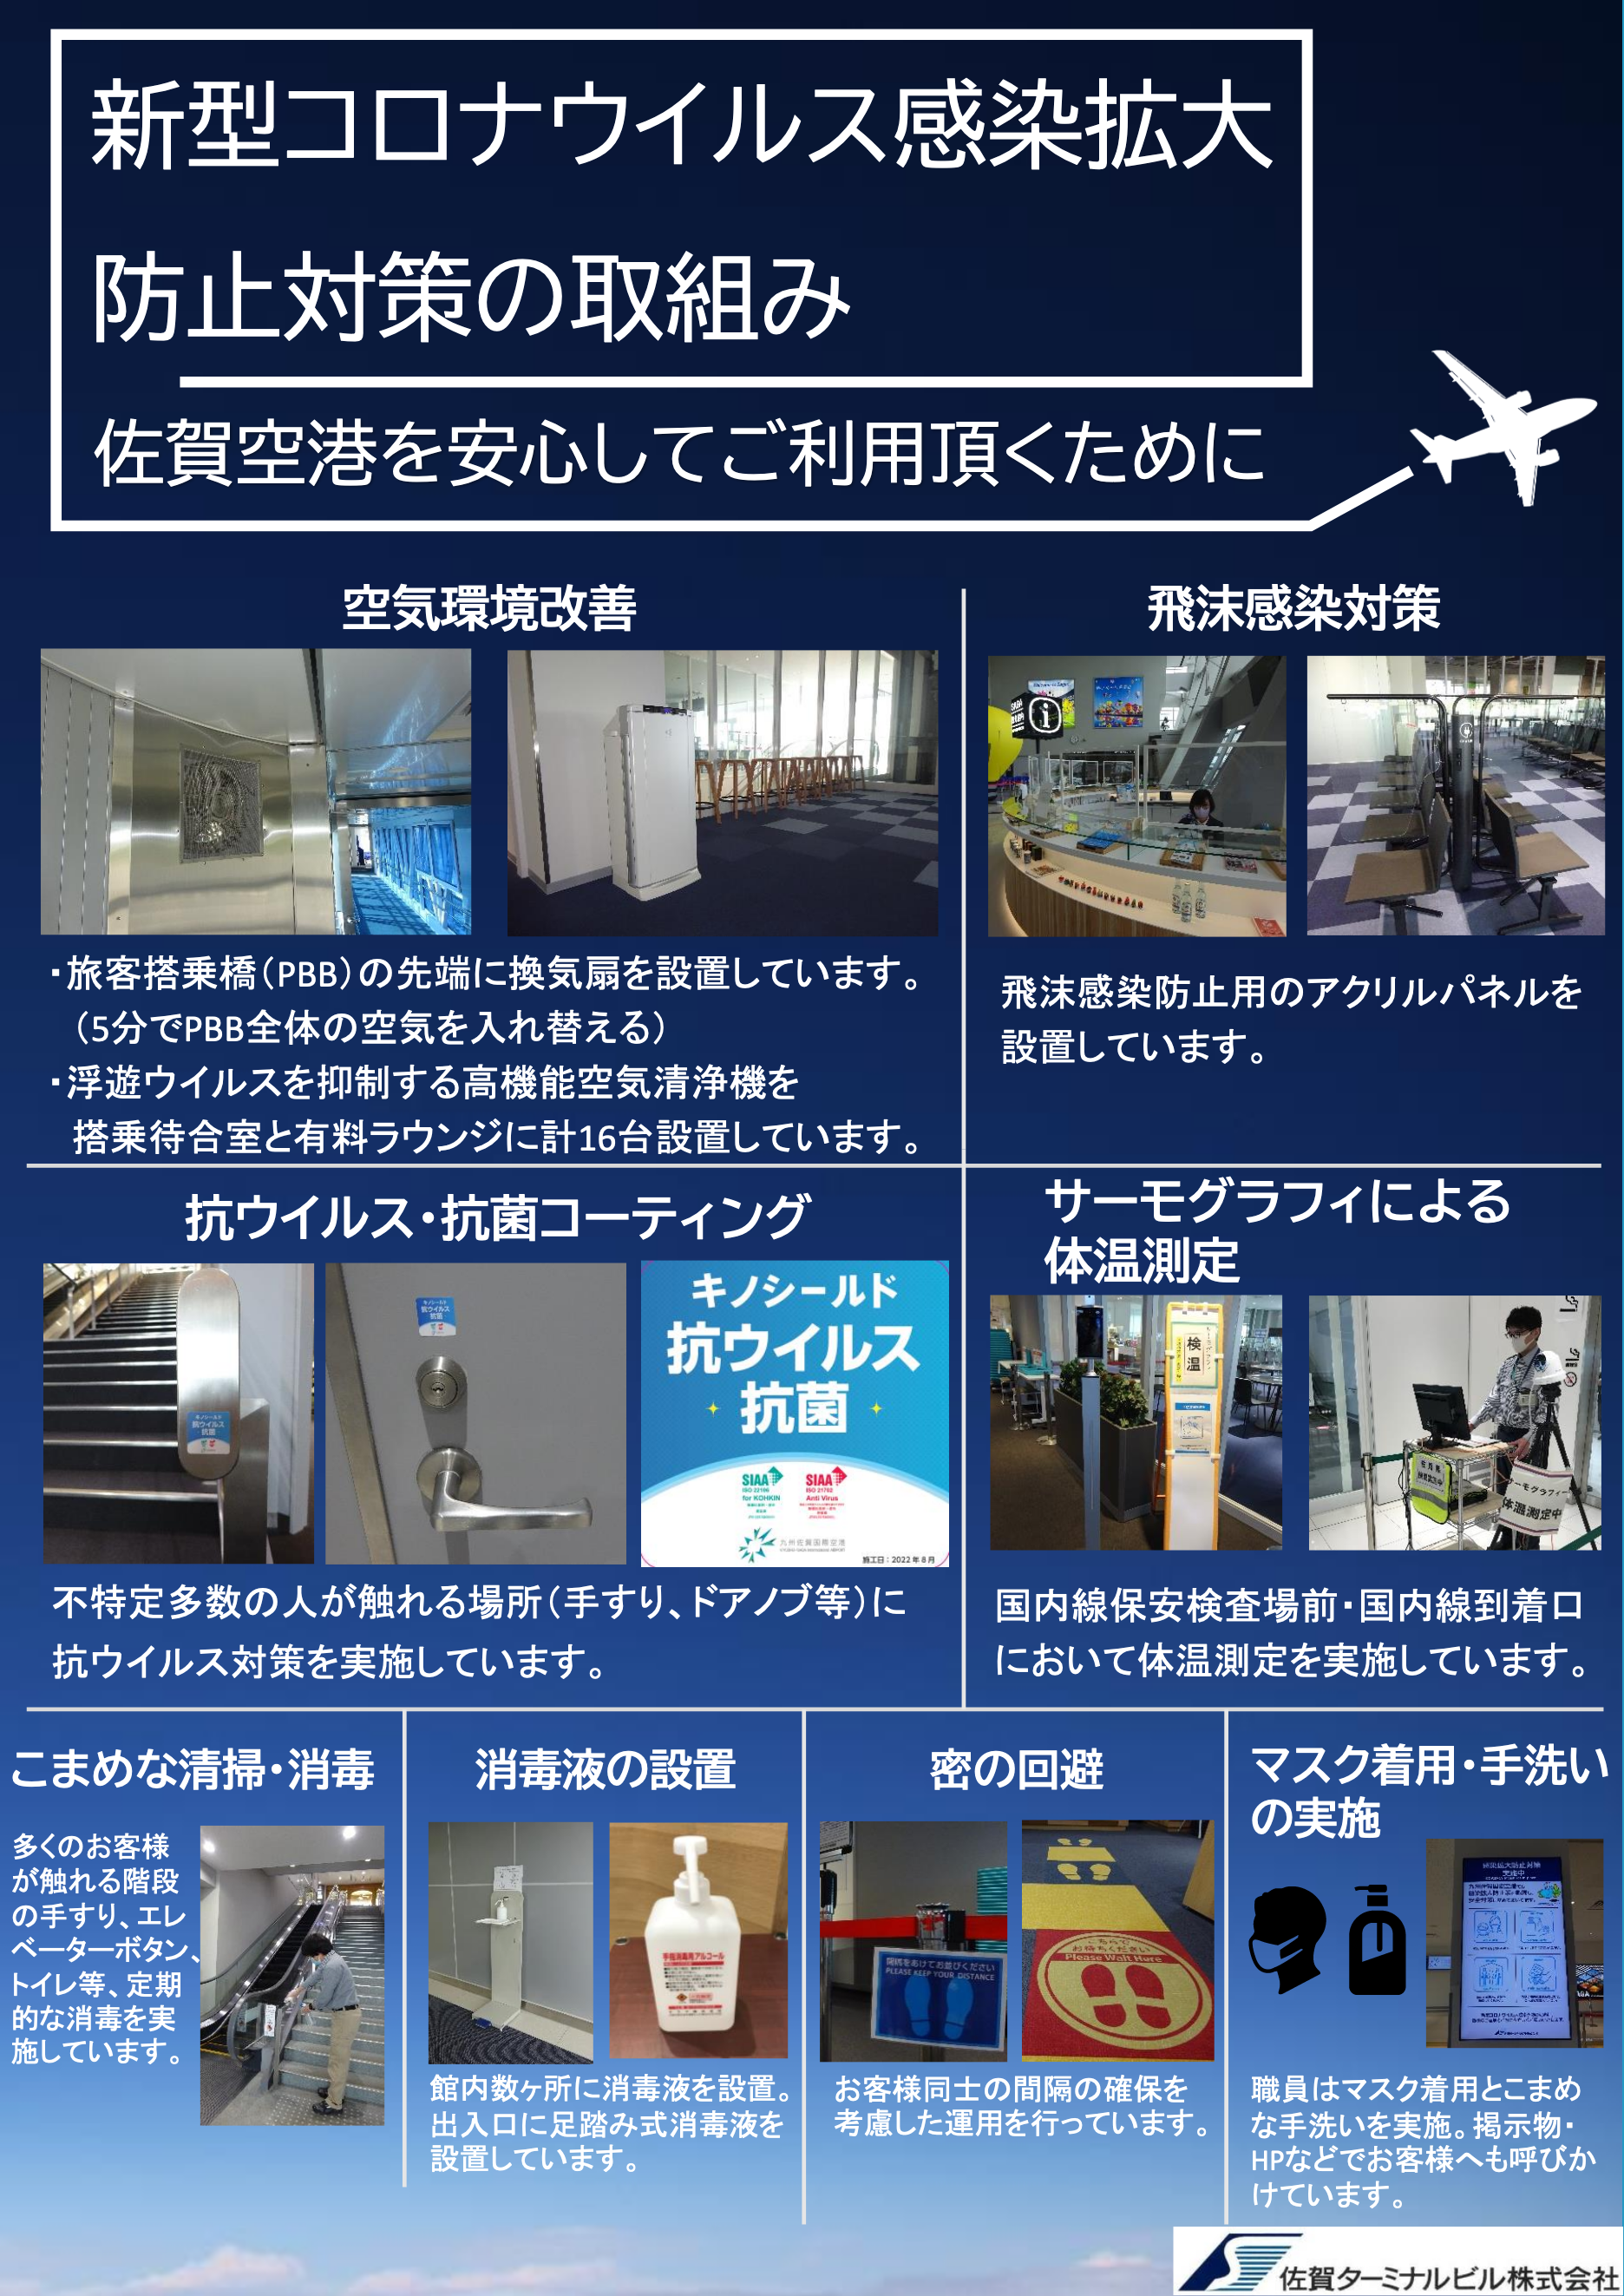 新型コロナウイルス感染防止のための 佐賀空港の取り組みについて